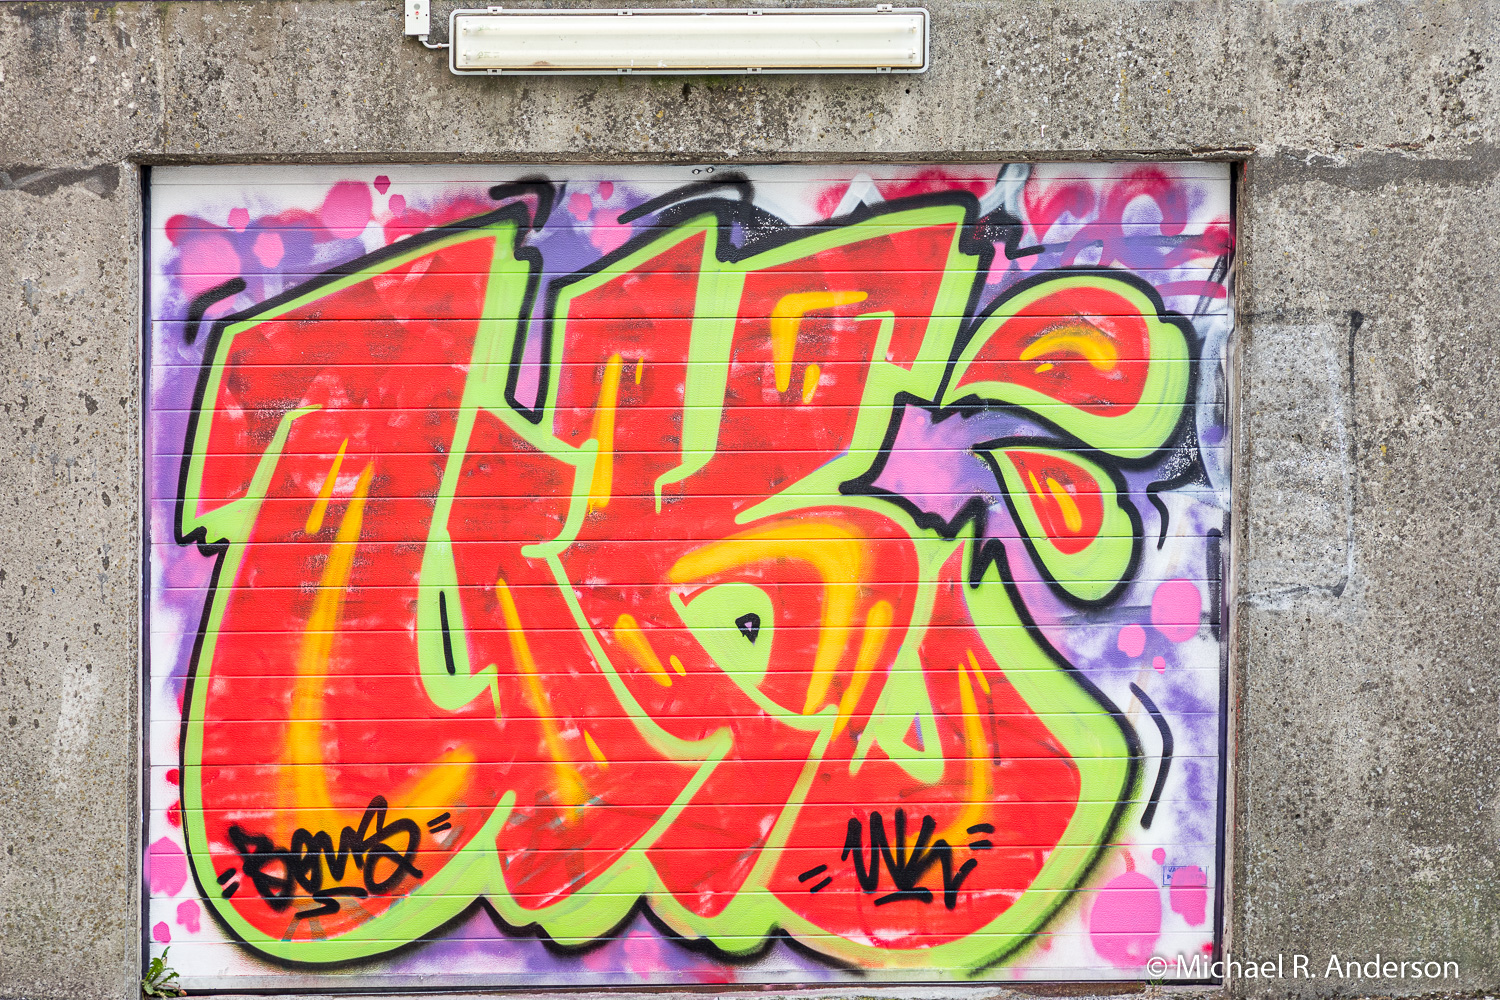 Graffiti & Street Art in Reykjavík